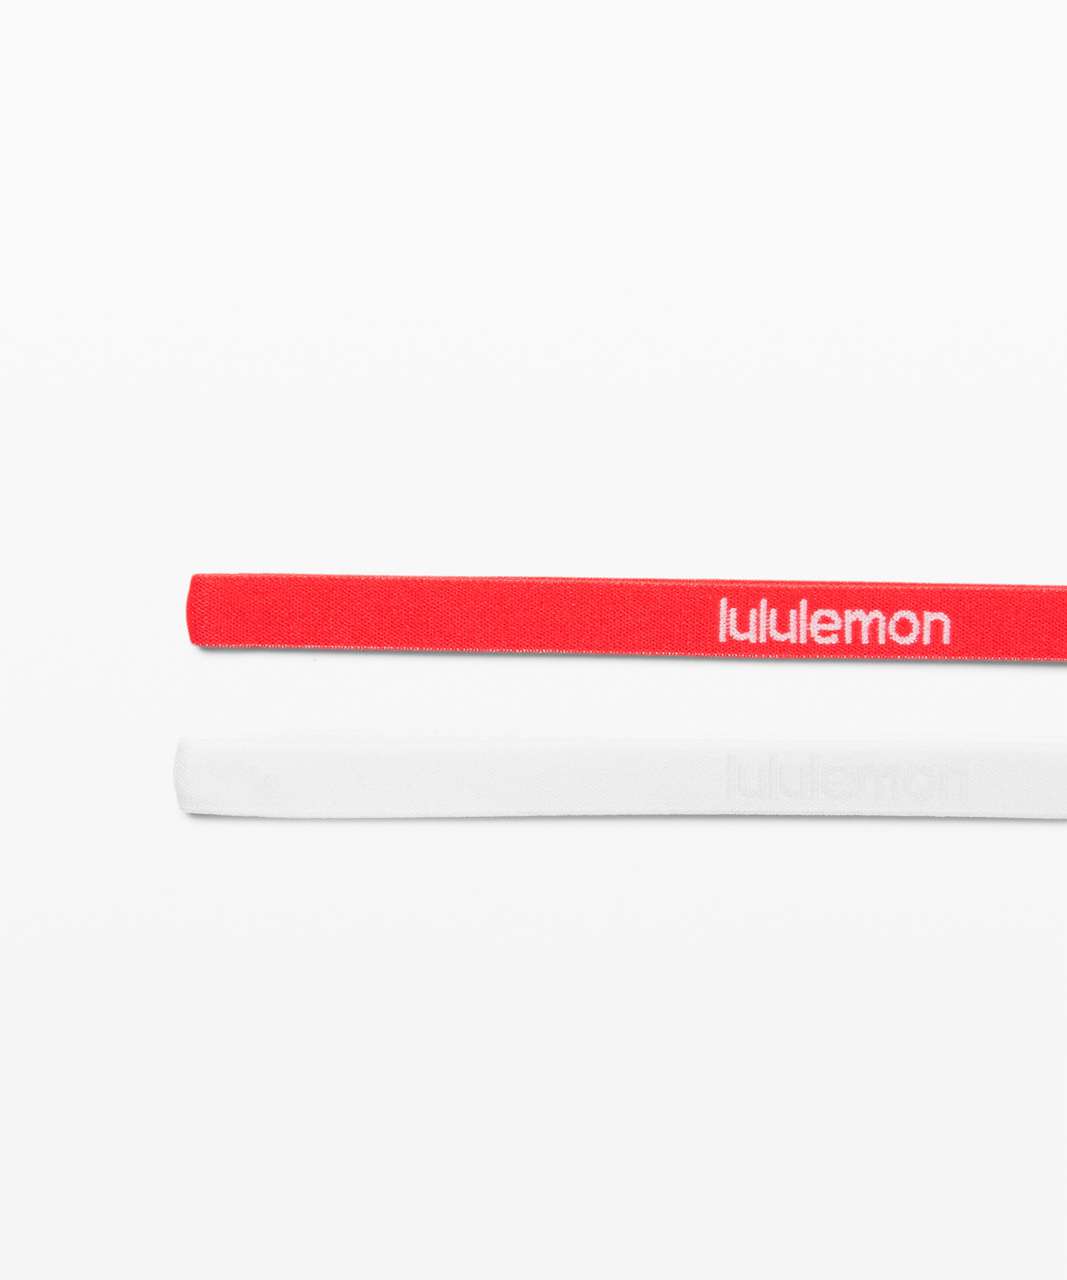 Lululemon Get in Line Headband *2 Pack - White / Carnation Red